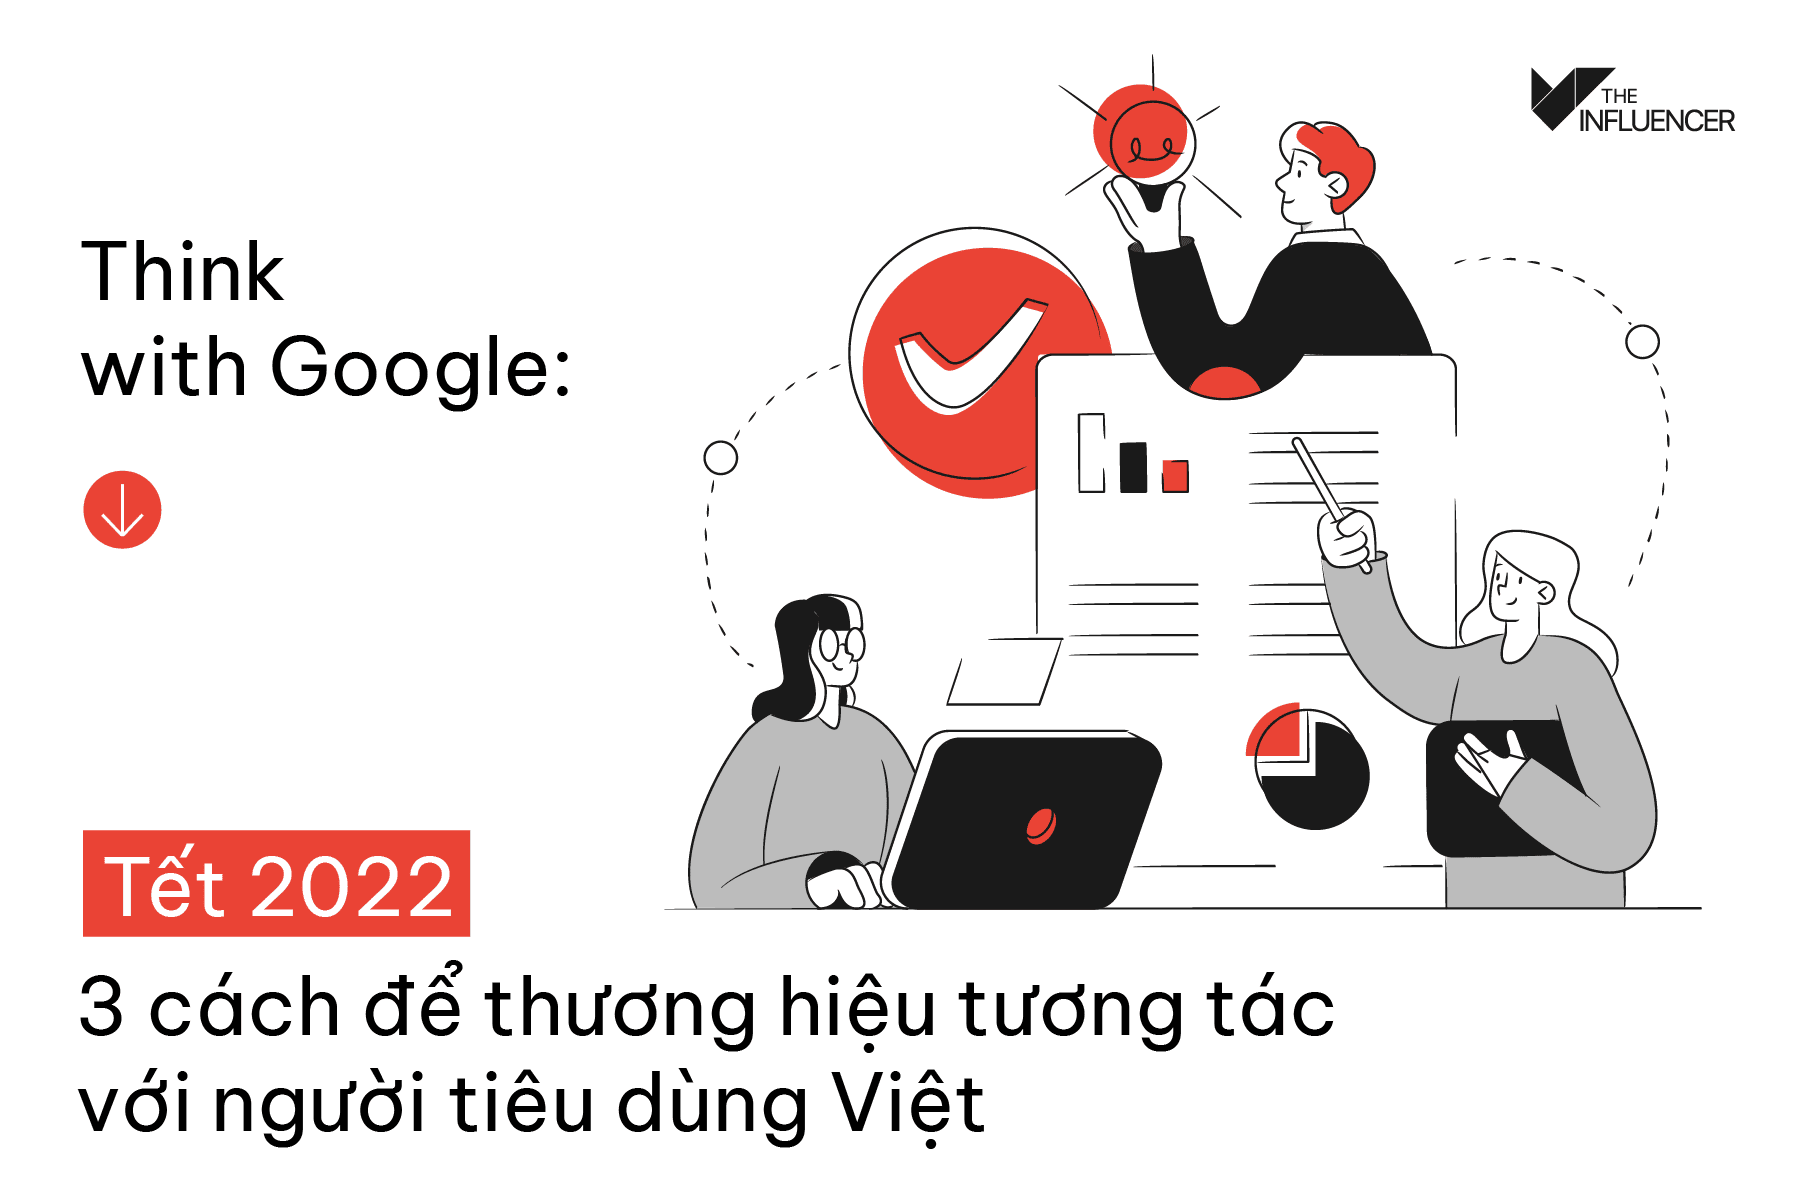 Think with Google: Tết 2022 - 3 cách để thương hiệu tương tác với người tiêu dùng Việt